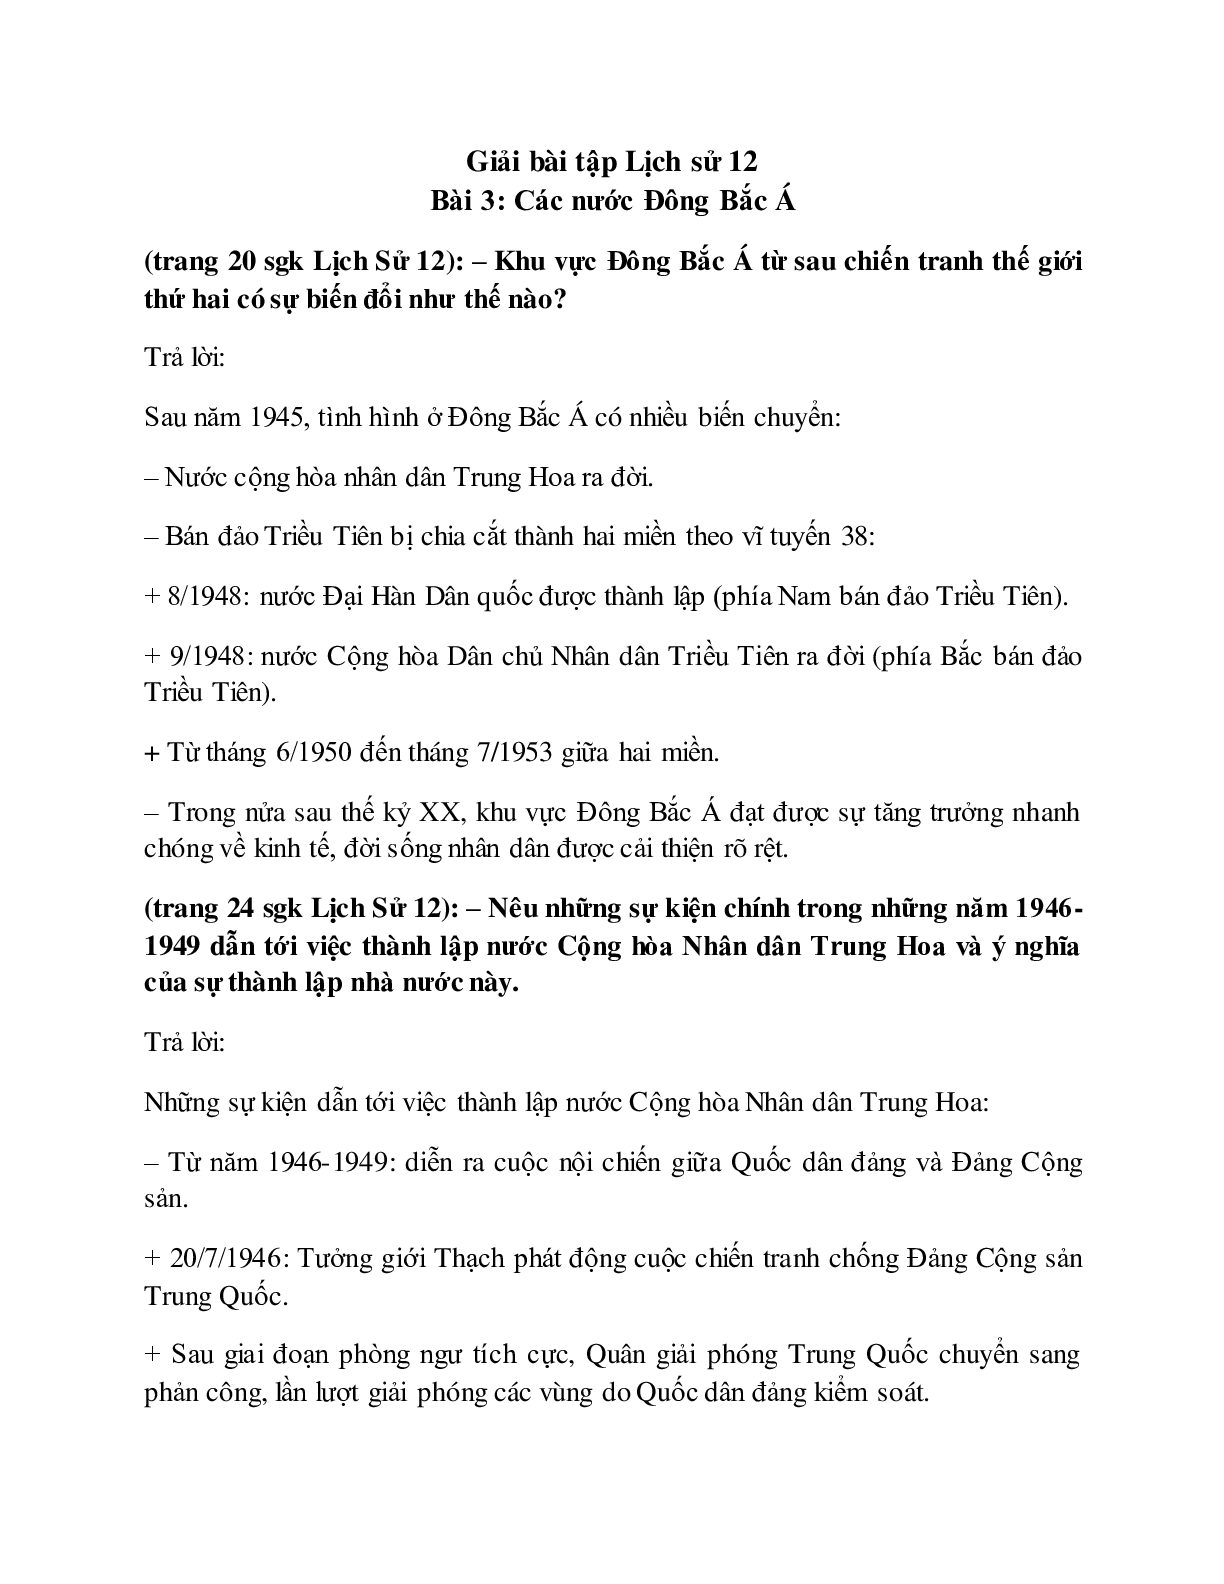 Giải bài tập SGK Lịch sử 12: Bài 3: Các nước Đông Bắc Á mới nhất (trang 1)